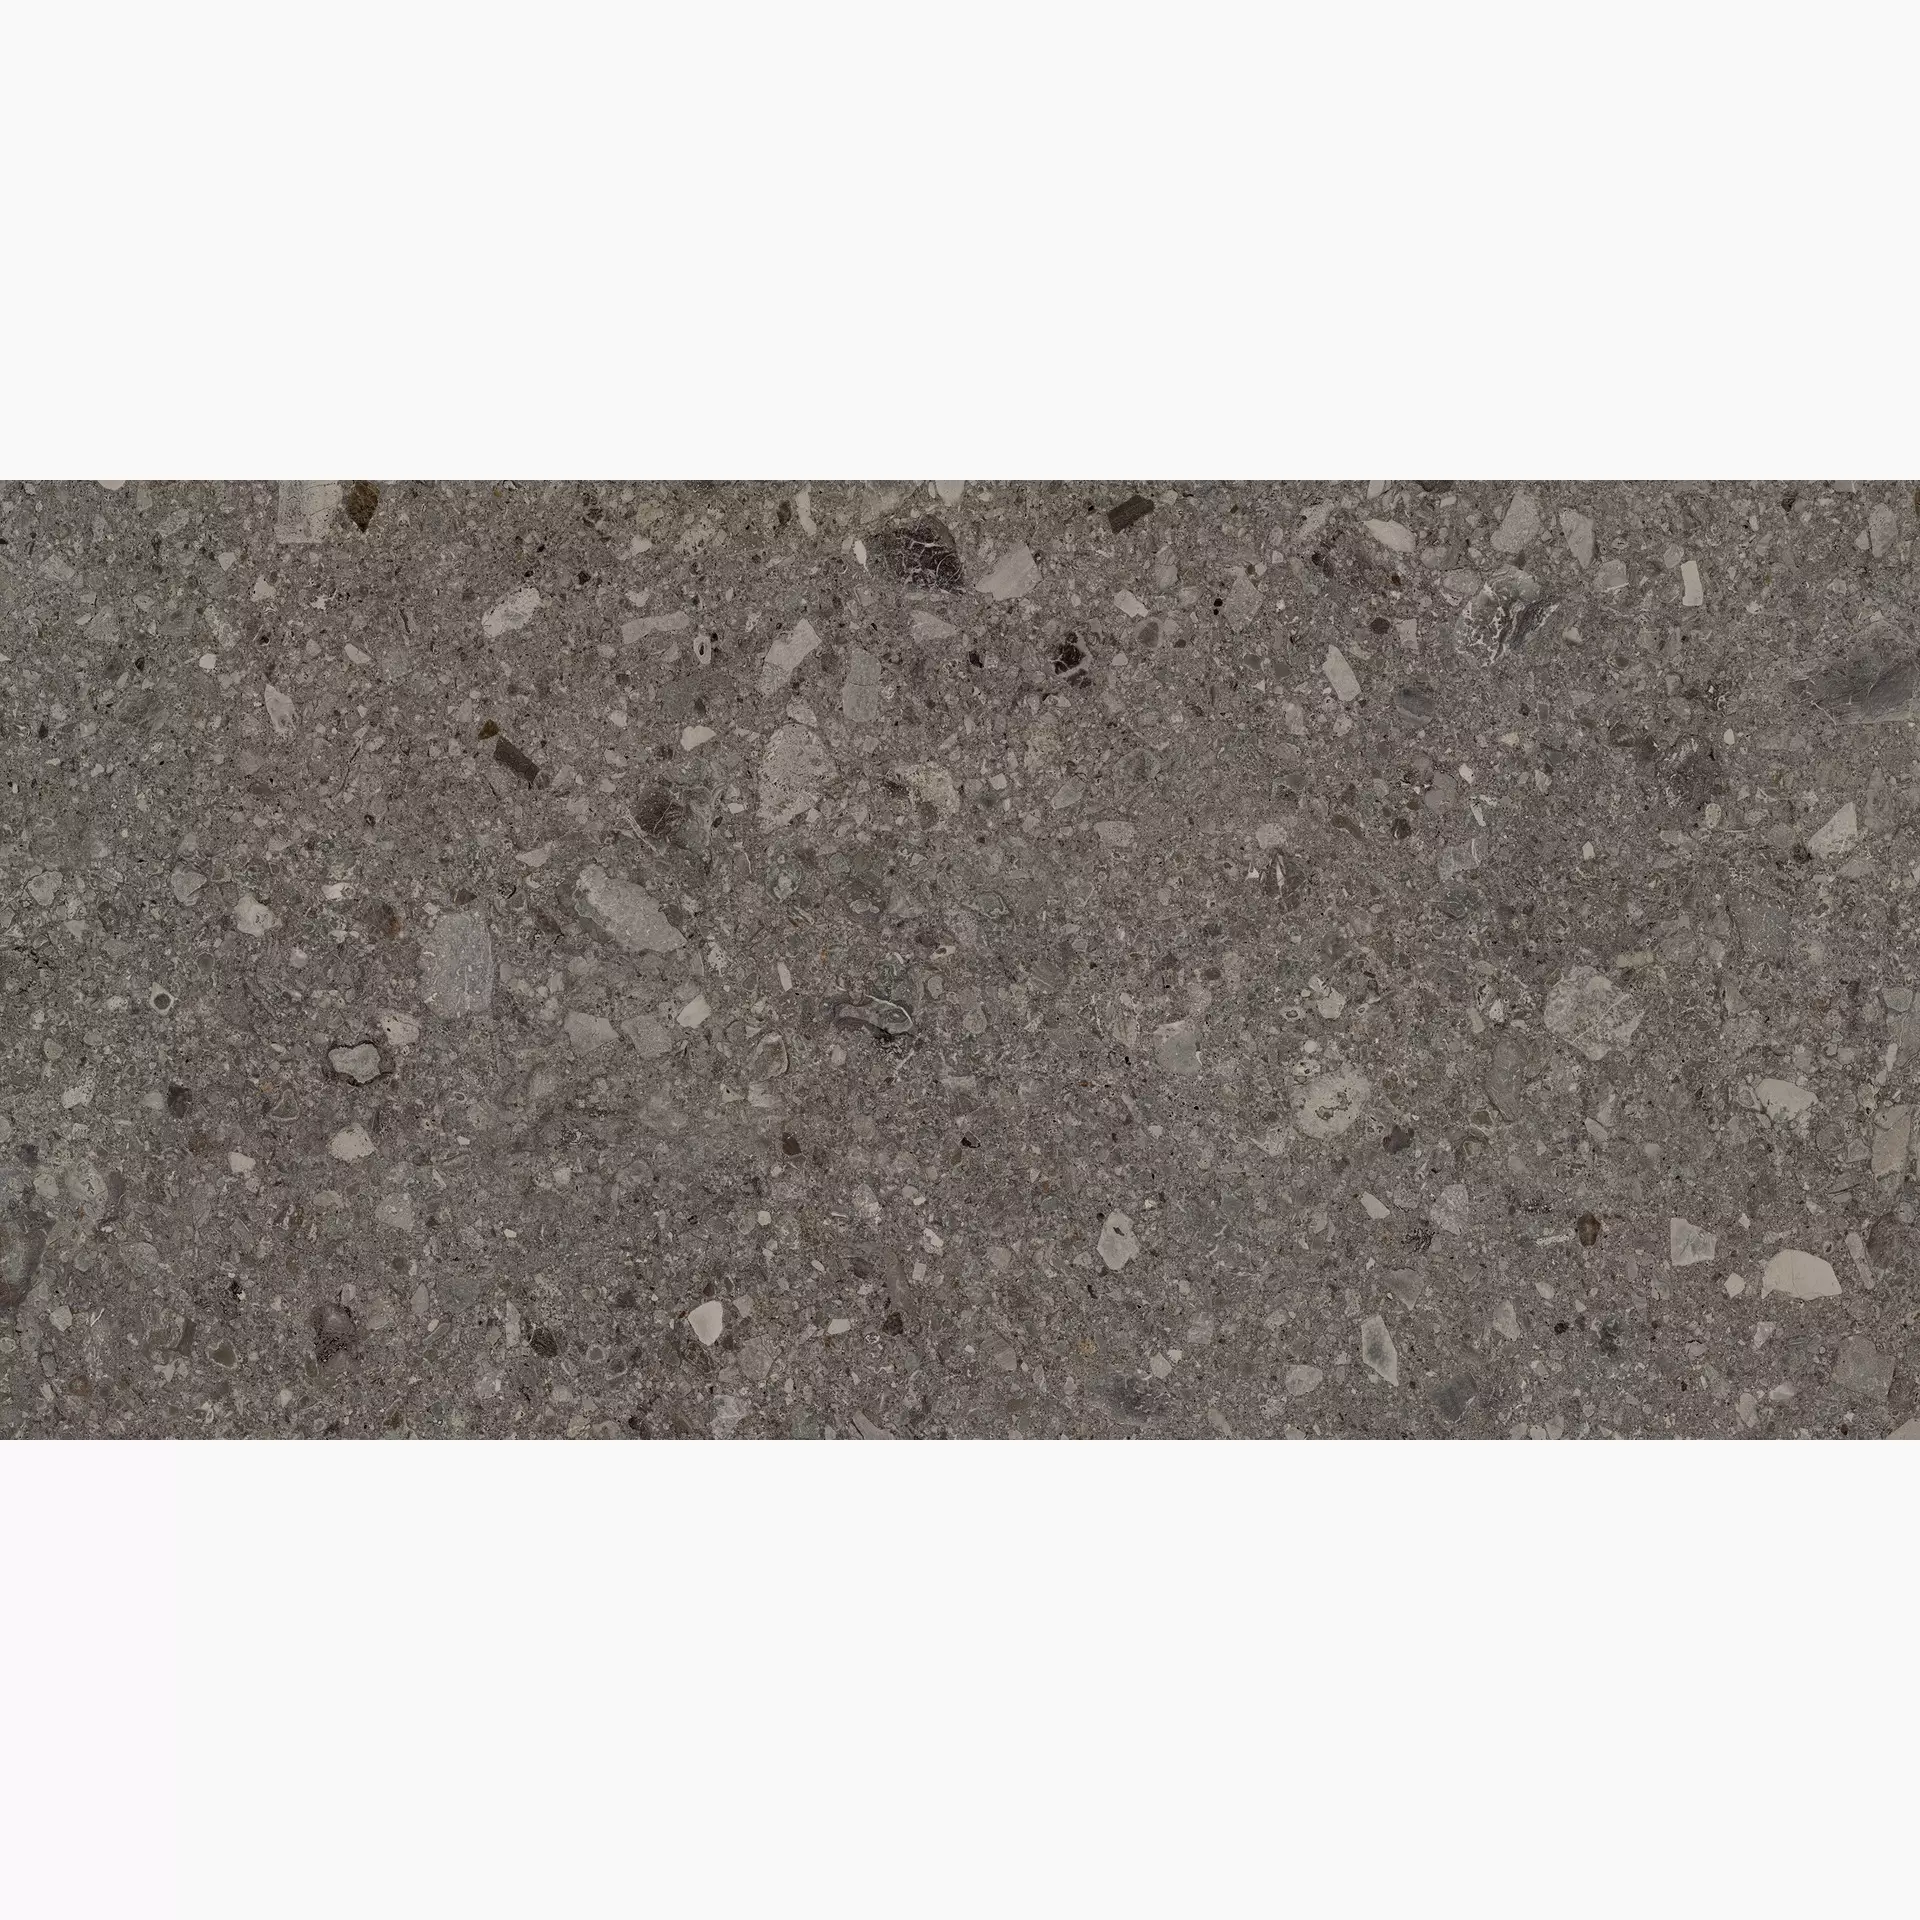 Marazzi Mystone Ceppo Di Gre Anthracite Naturale – Matt MFWS 60x120cm rectified 10mm